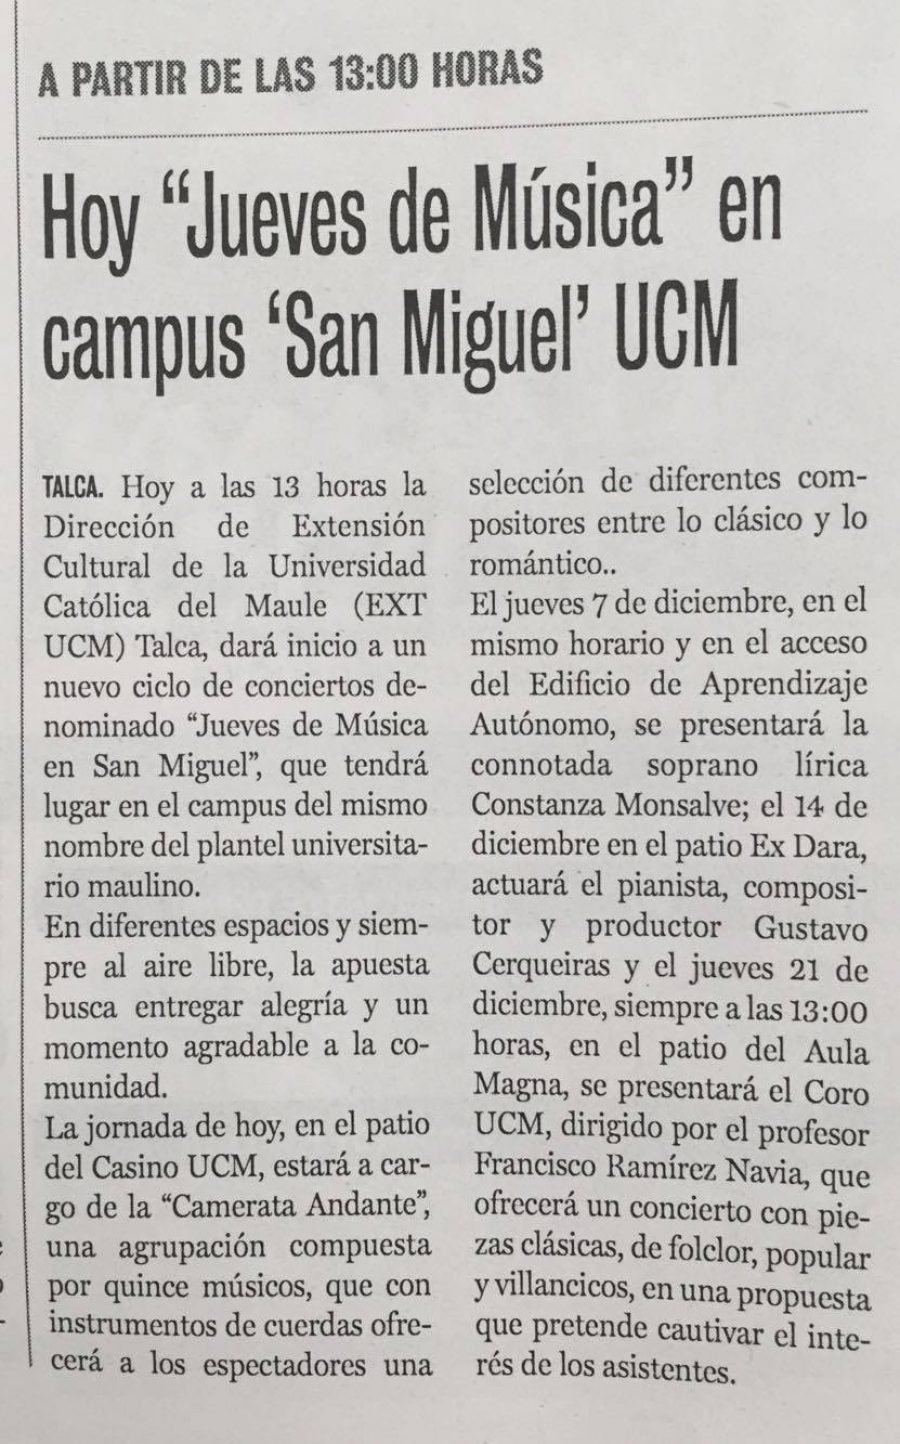 30 de noviembre en Diario La Prensa: “Hoy jueves de música en campus San Miguel UCM”